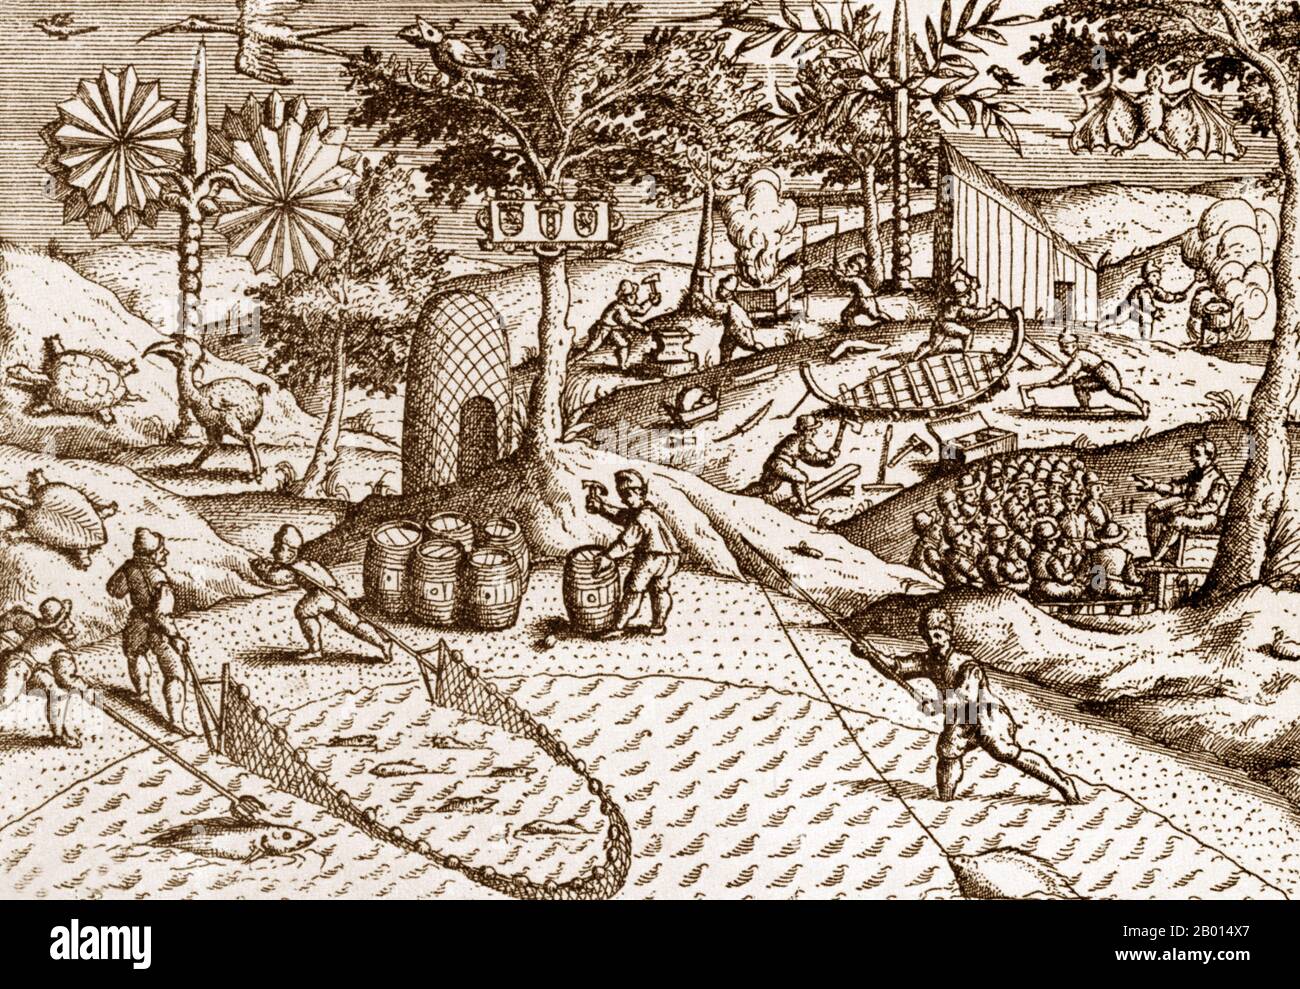 Pays-Bas/Maurice : les marins de van Warwijk sur l’île Maurice, revendiqués par les Hollandais en 1598. Remarquez les armoiries hollandaises clouées à un arbre au centre, ce qui permet de savoir qui colonise l'île. Gravure en cuivre par Johann Theodor de Bry (1561-1623), 1601. Située à environ 900 km à l'est de Madagascar, l'île Maurice était un port idéal pour les explorateurs européens médiévaux en route vers l'Inde et les Indes orientales. Elle était également non peuplée, mais pour les animaux, y compris l'oiseau dodo. Il y a tout d'abord eu les Hollandais: Wybant van Warwijk a revendiqué l'île Maurice pour la Hollande en 1598. Banque D'Images